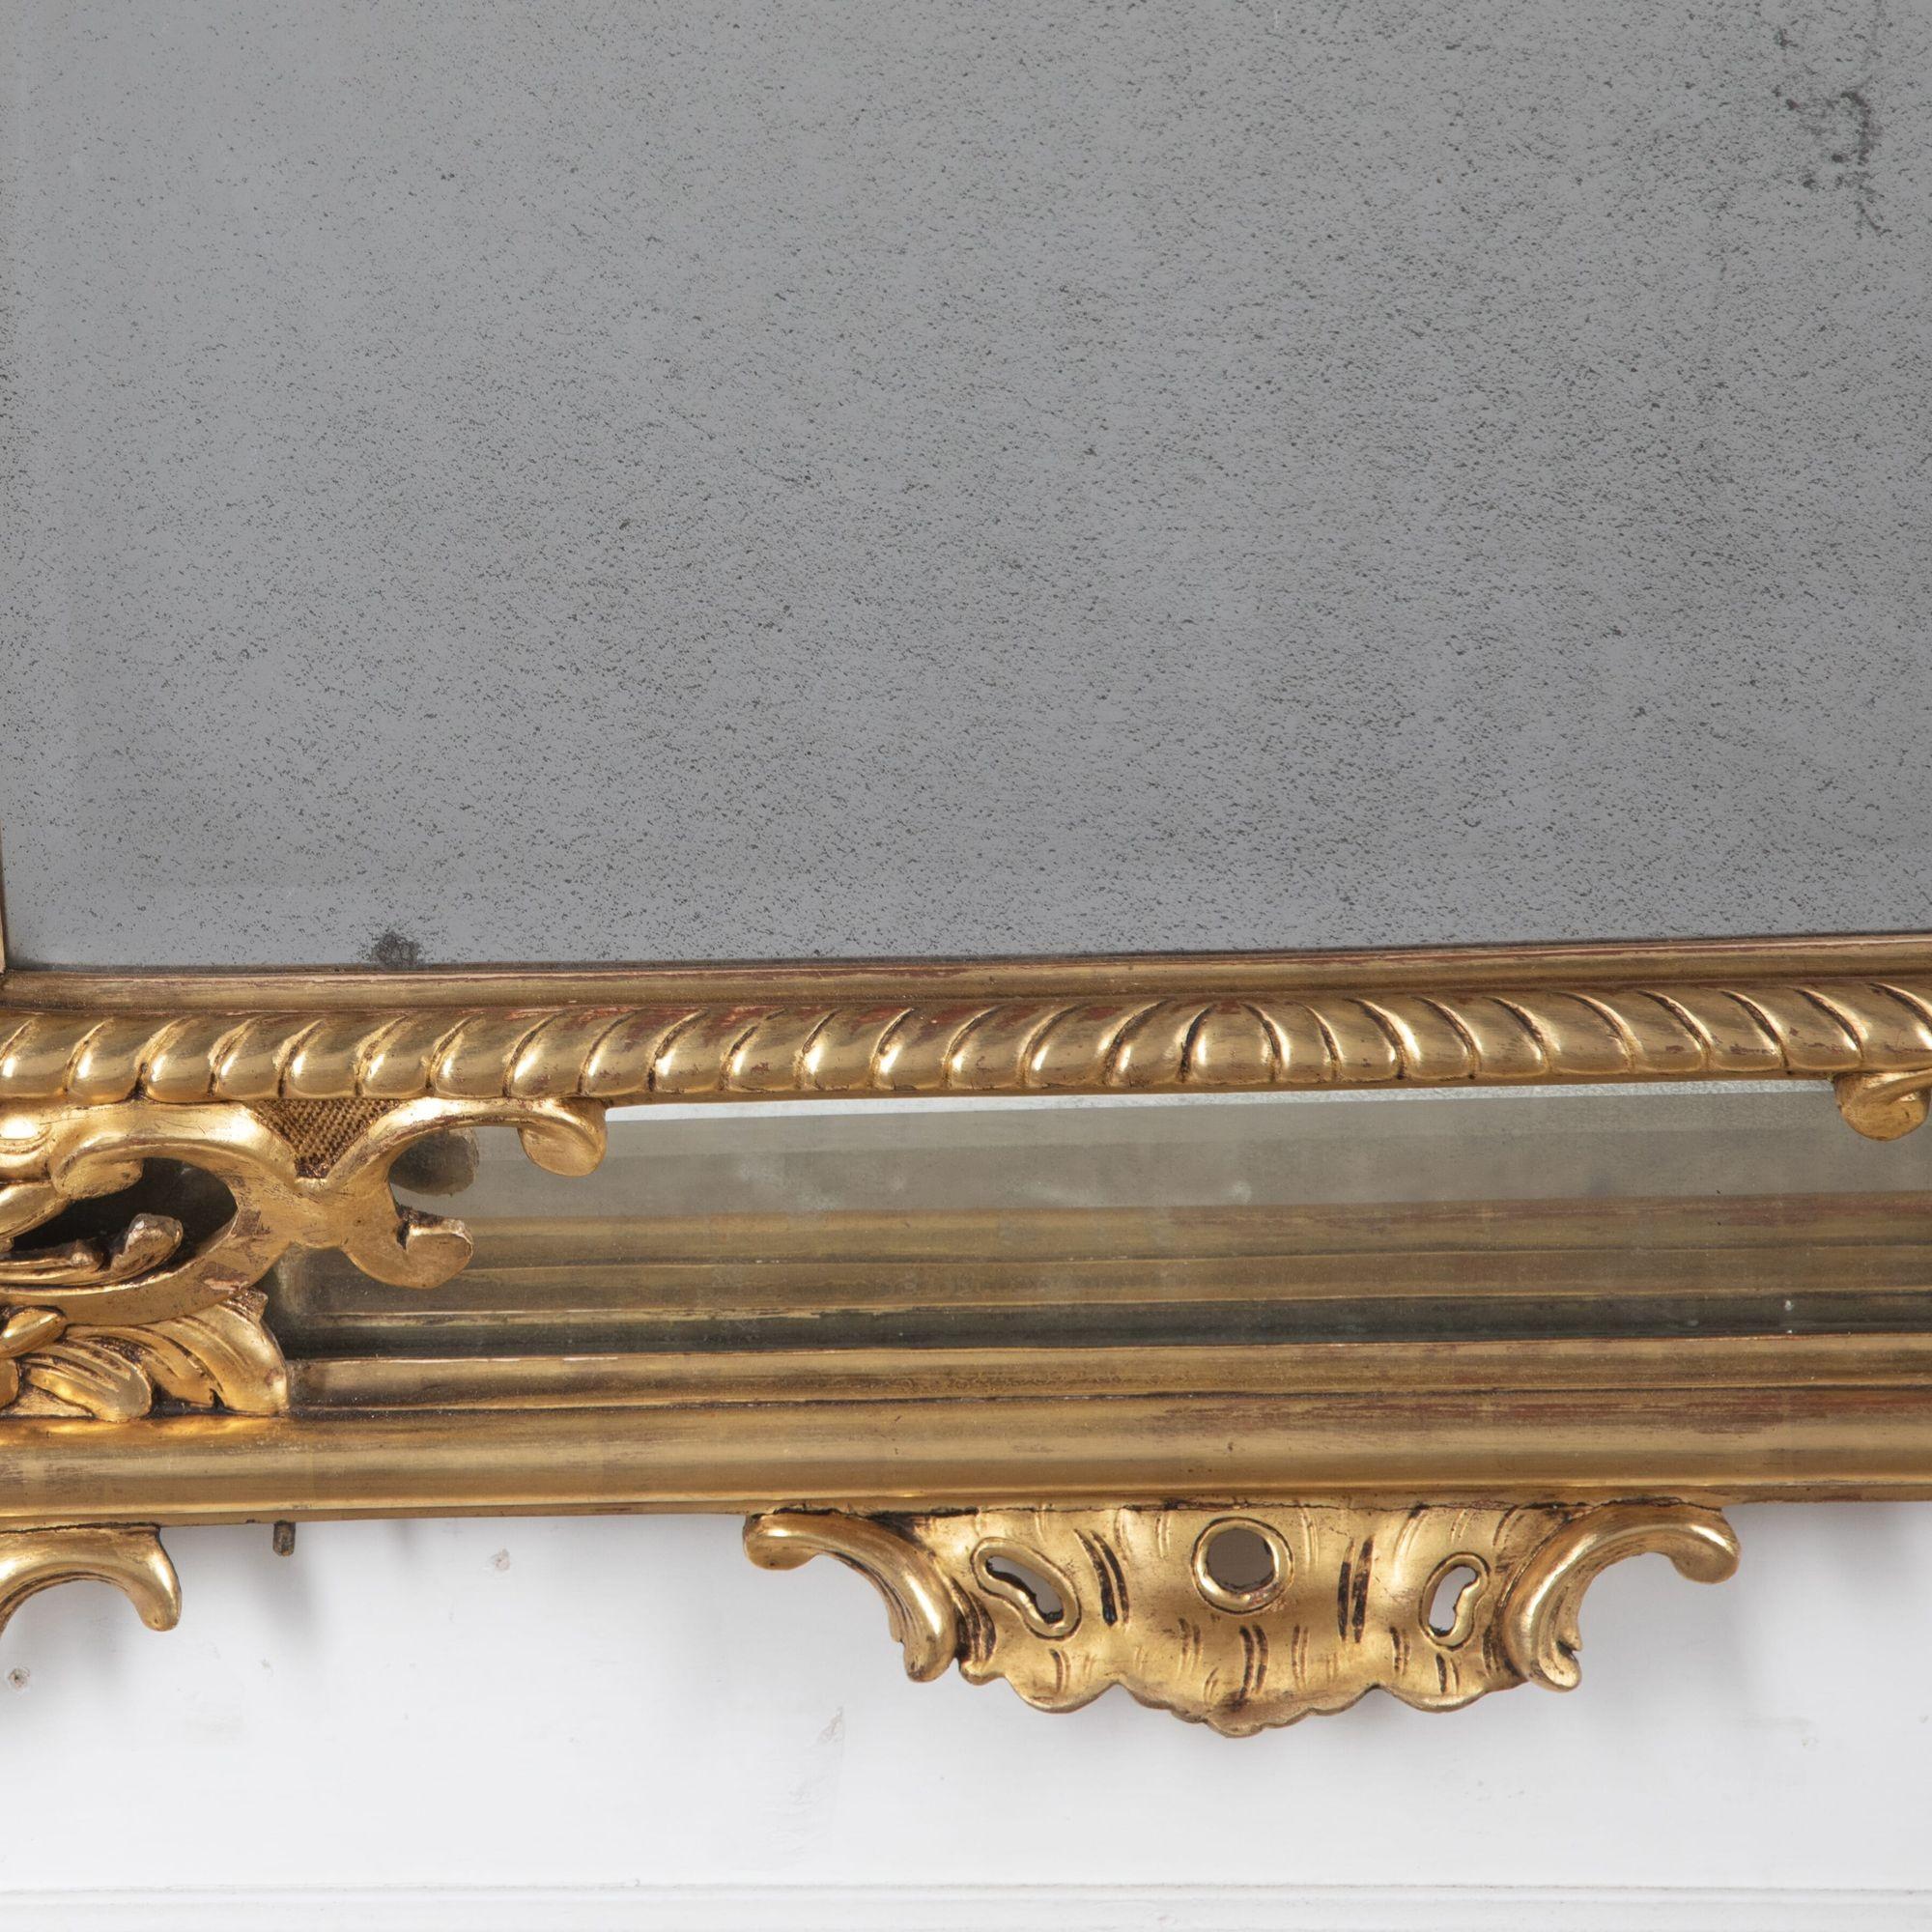 19. Jahrhundert Französisch großen vergoldeten Holz Kissen Spiegel von feiner Qualität.
Mit Restaurierung.